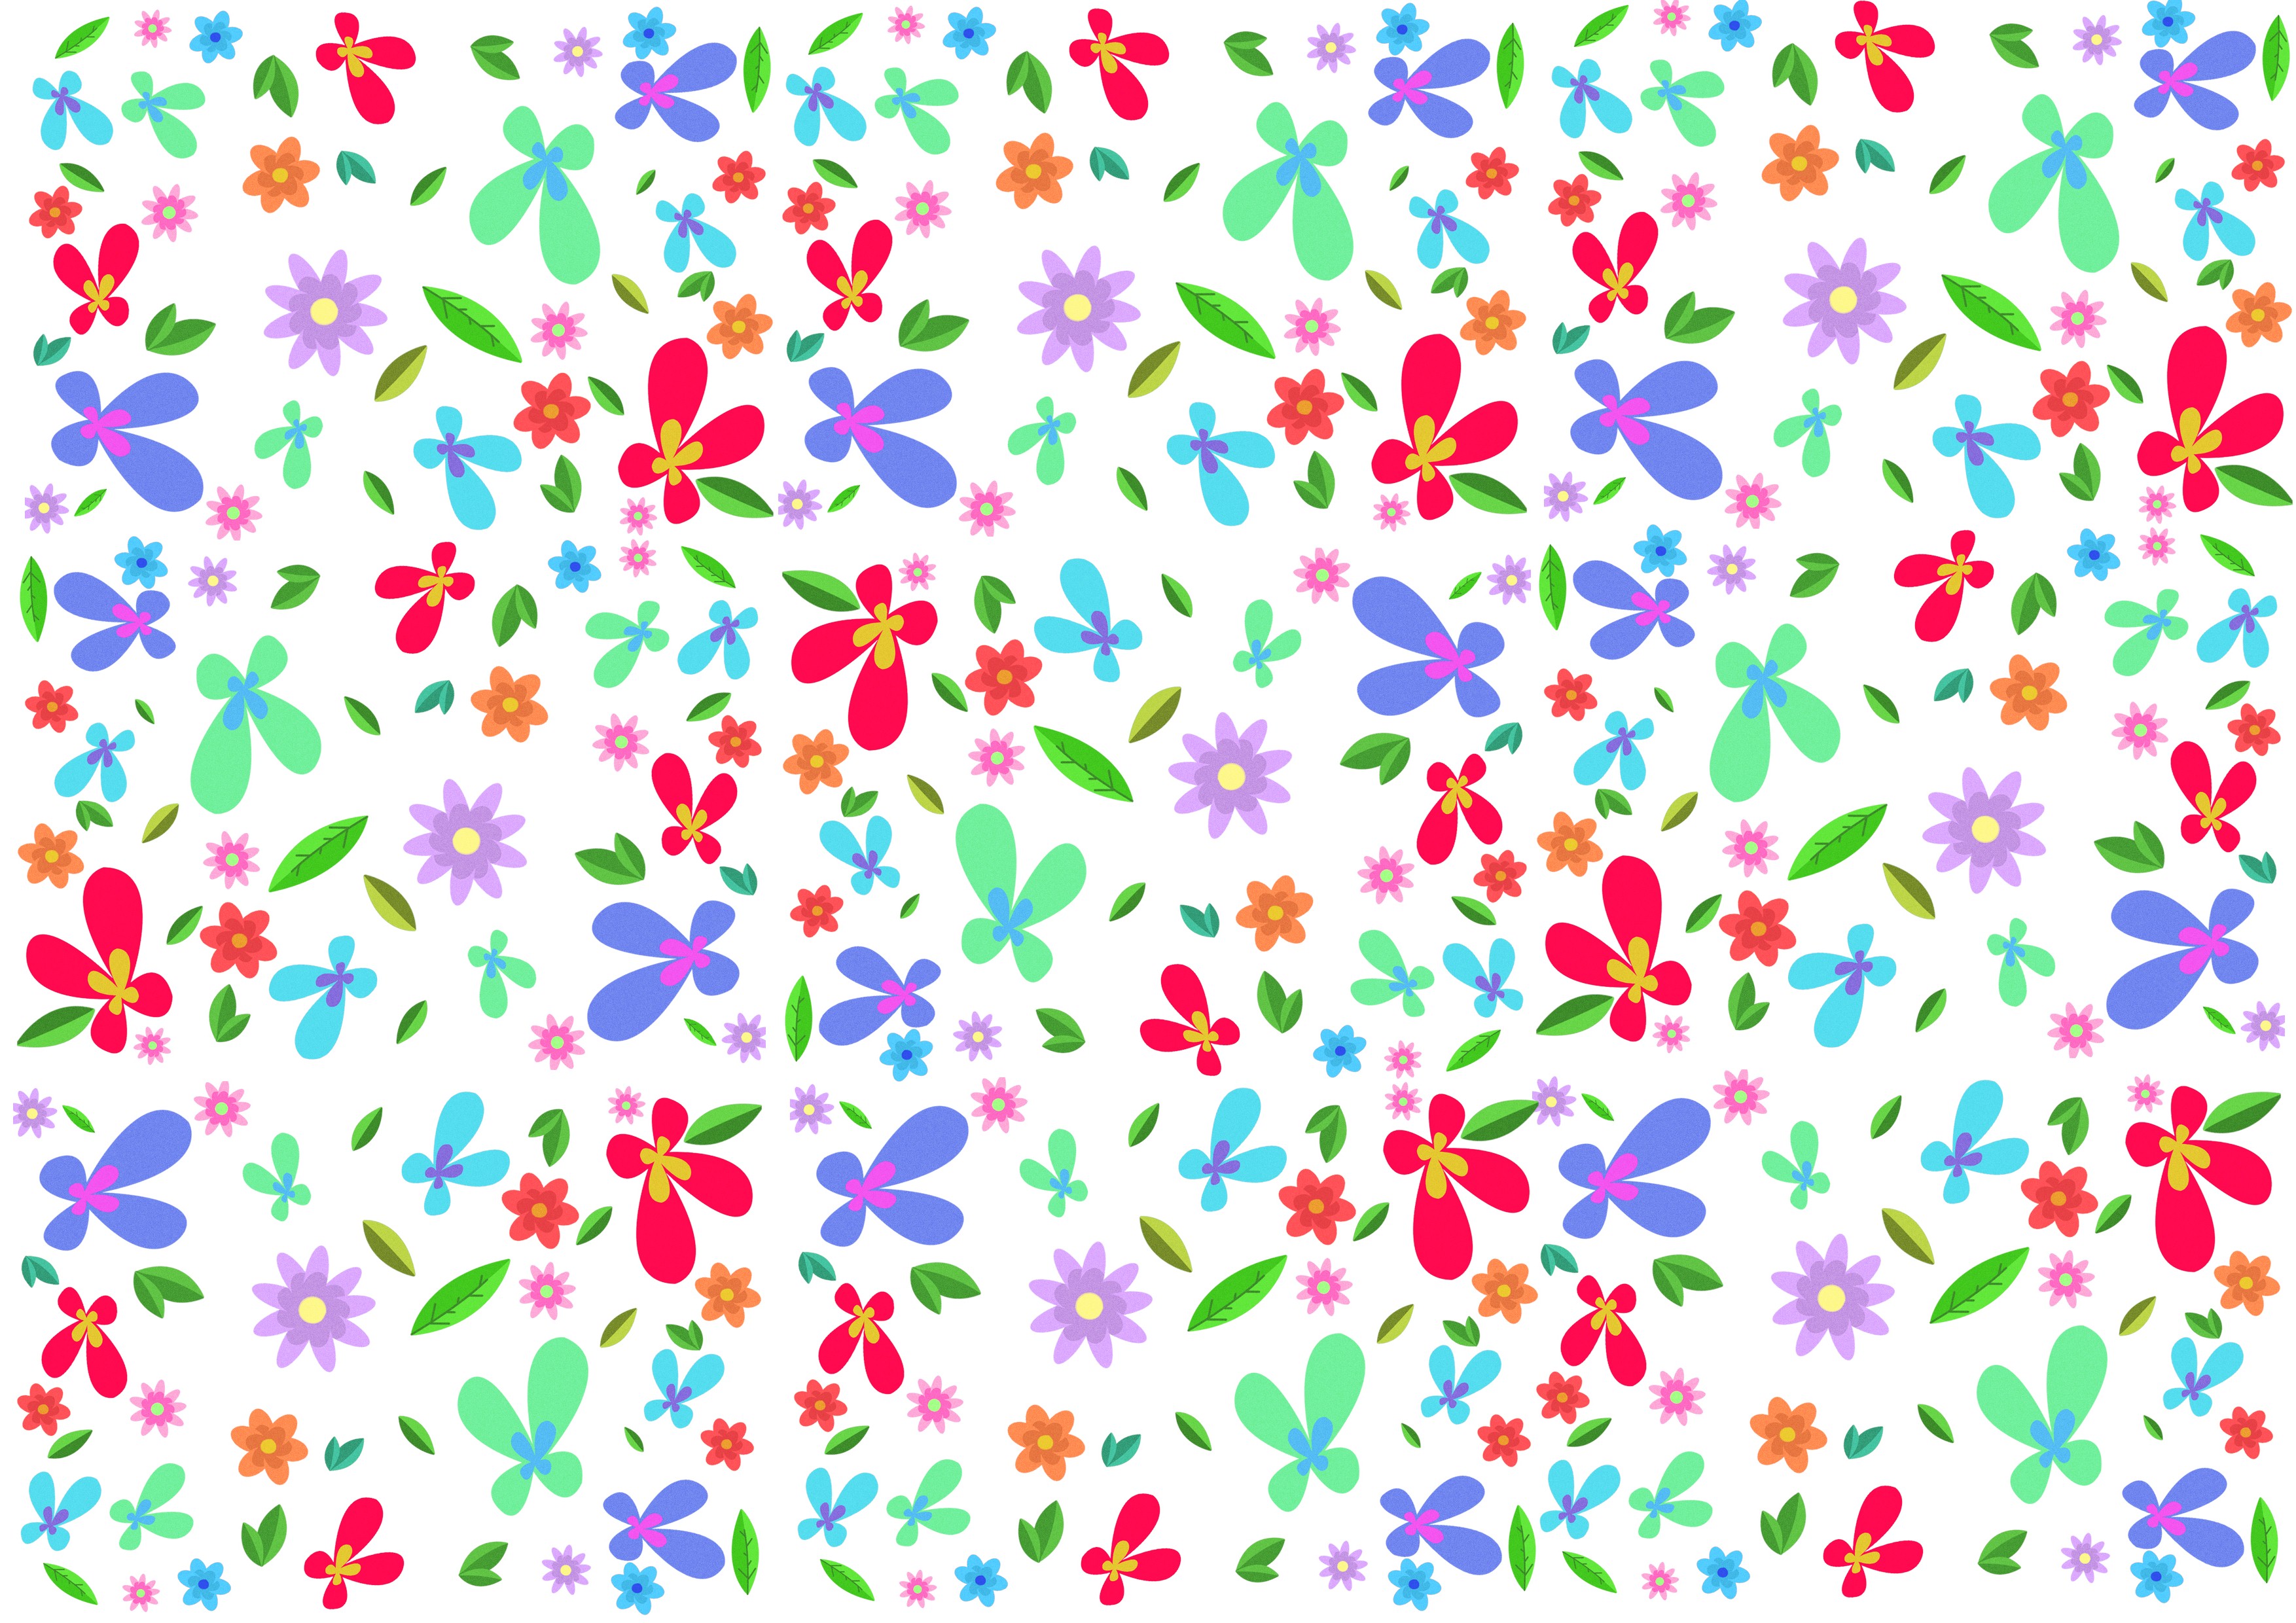 General 3508x2480 pattern digital art simple background floral minimalism flowers petals leaves